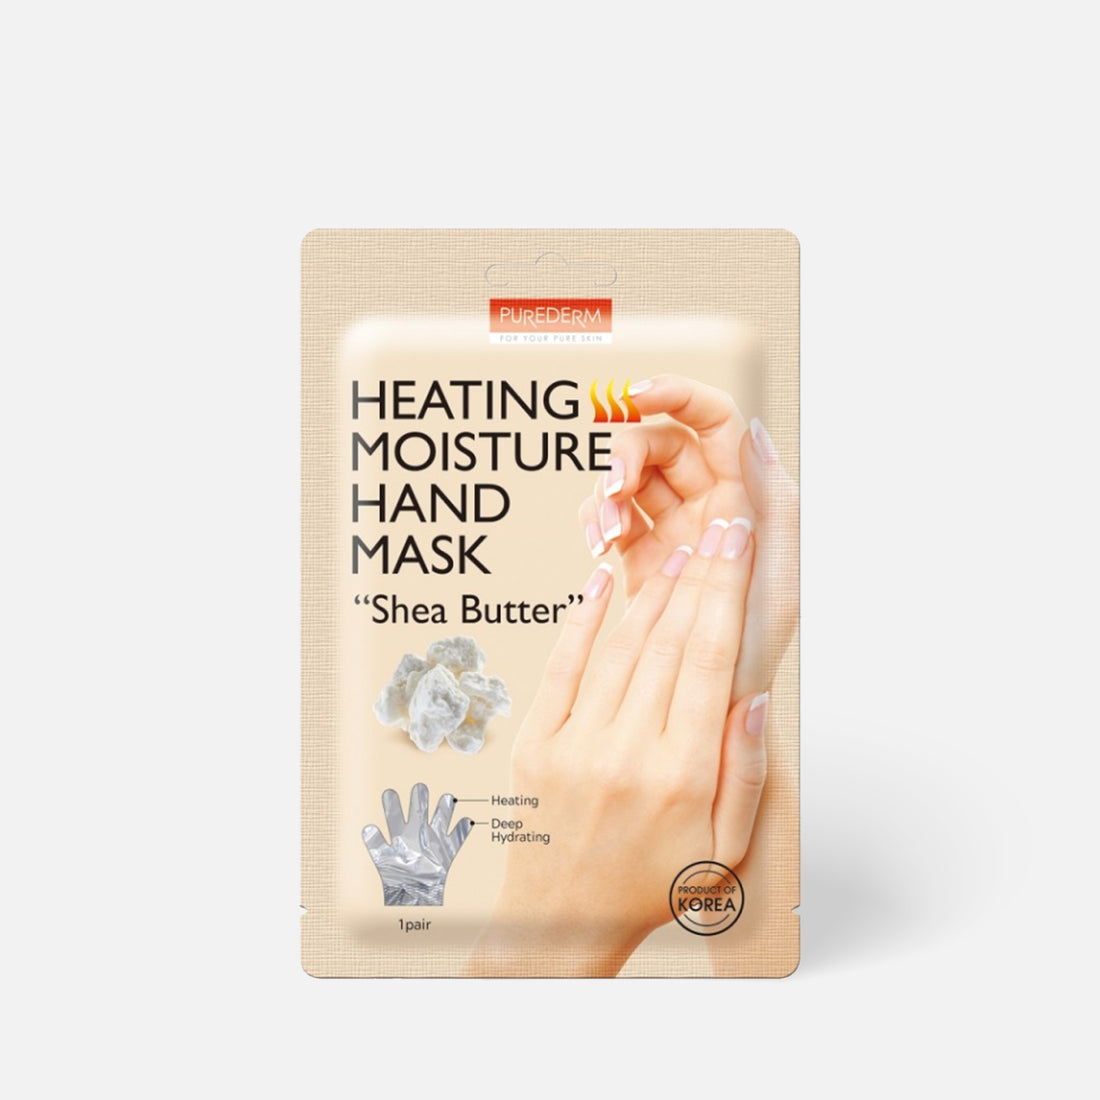 PUREDERM Heating Moisture Hand Mask Shea Butter